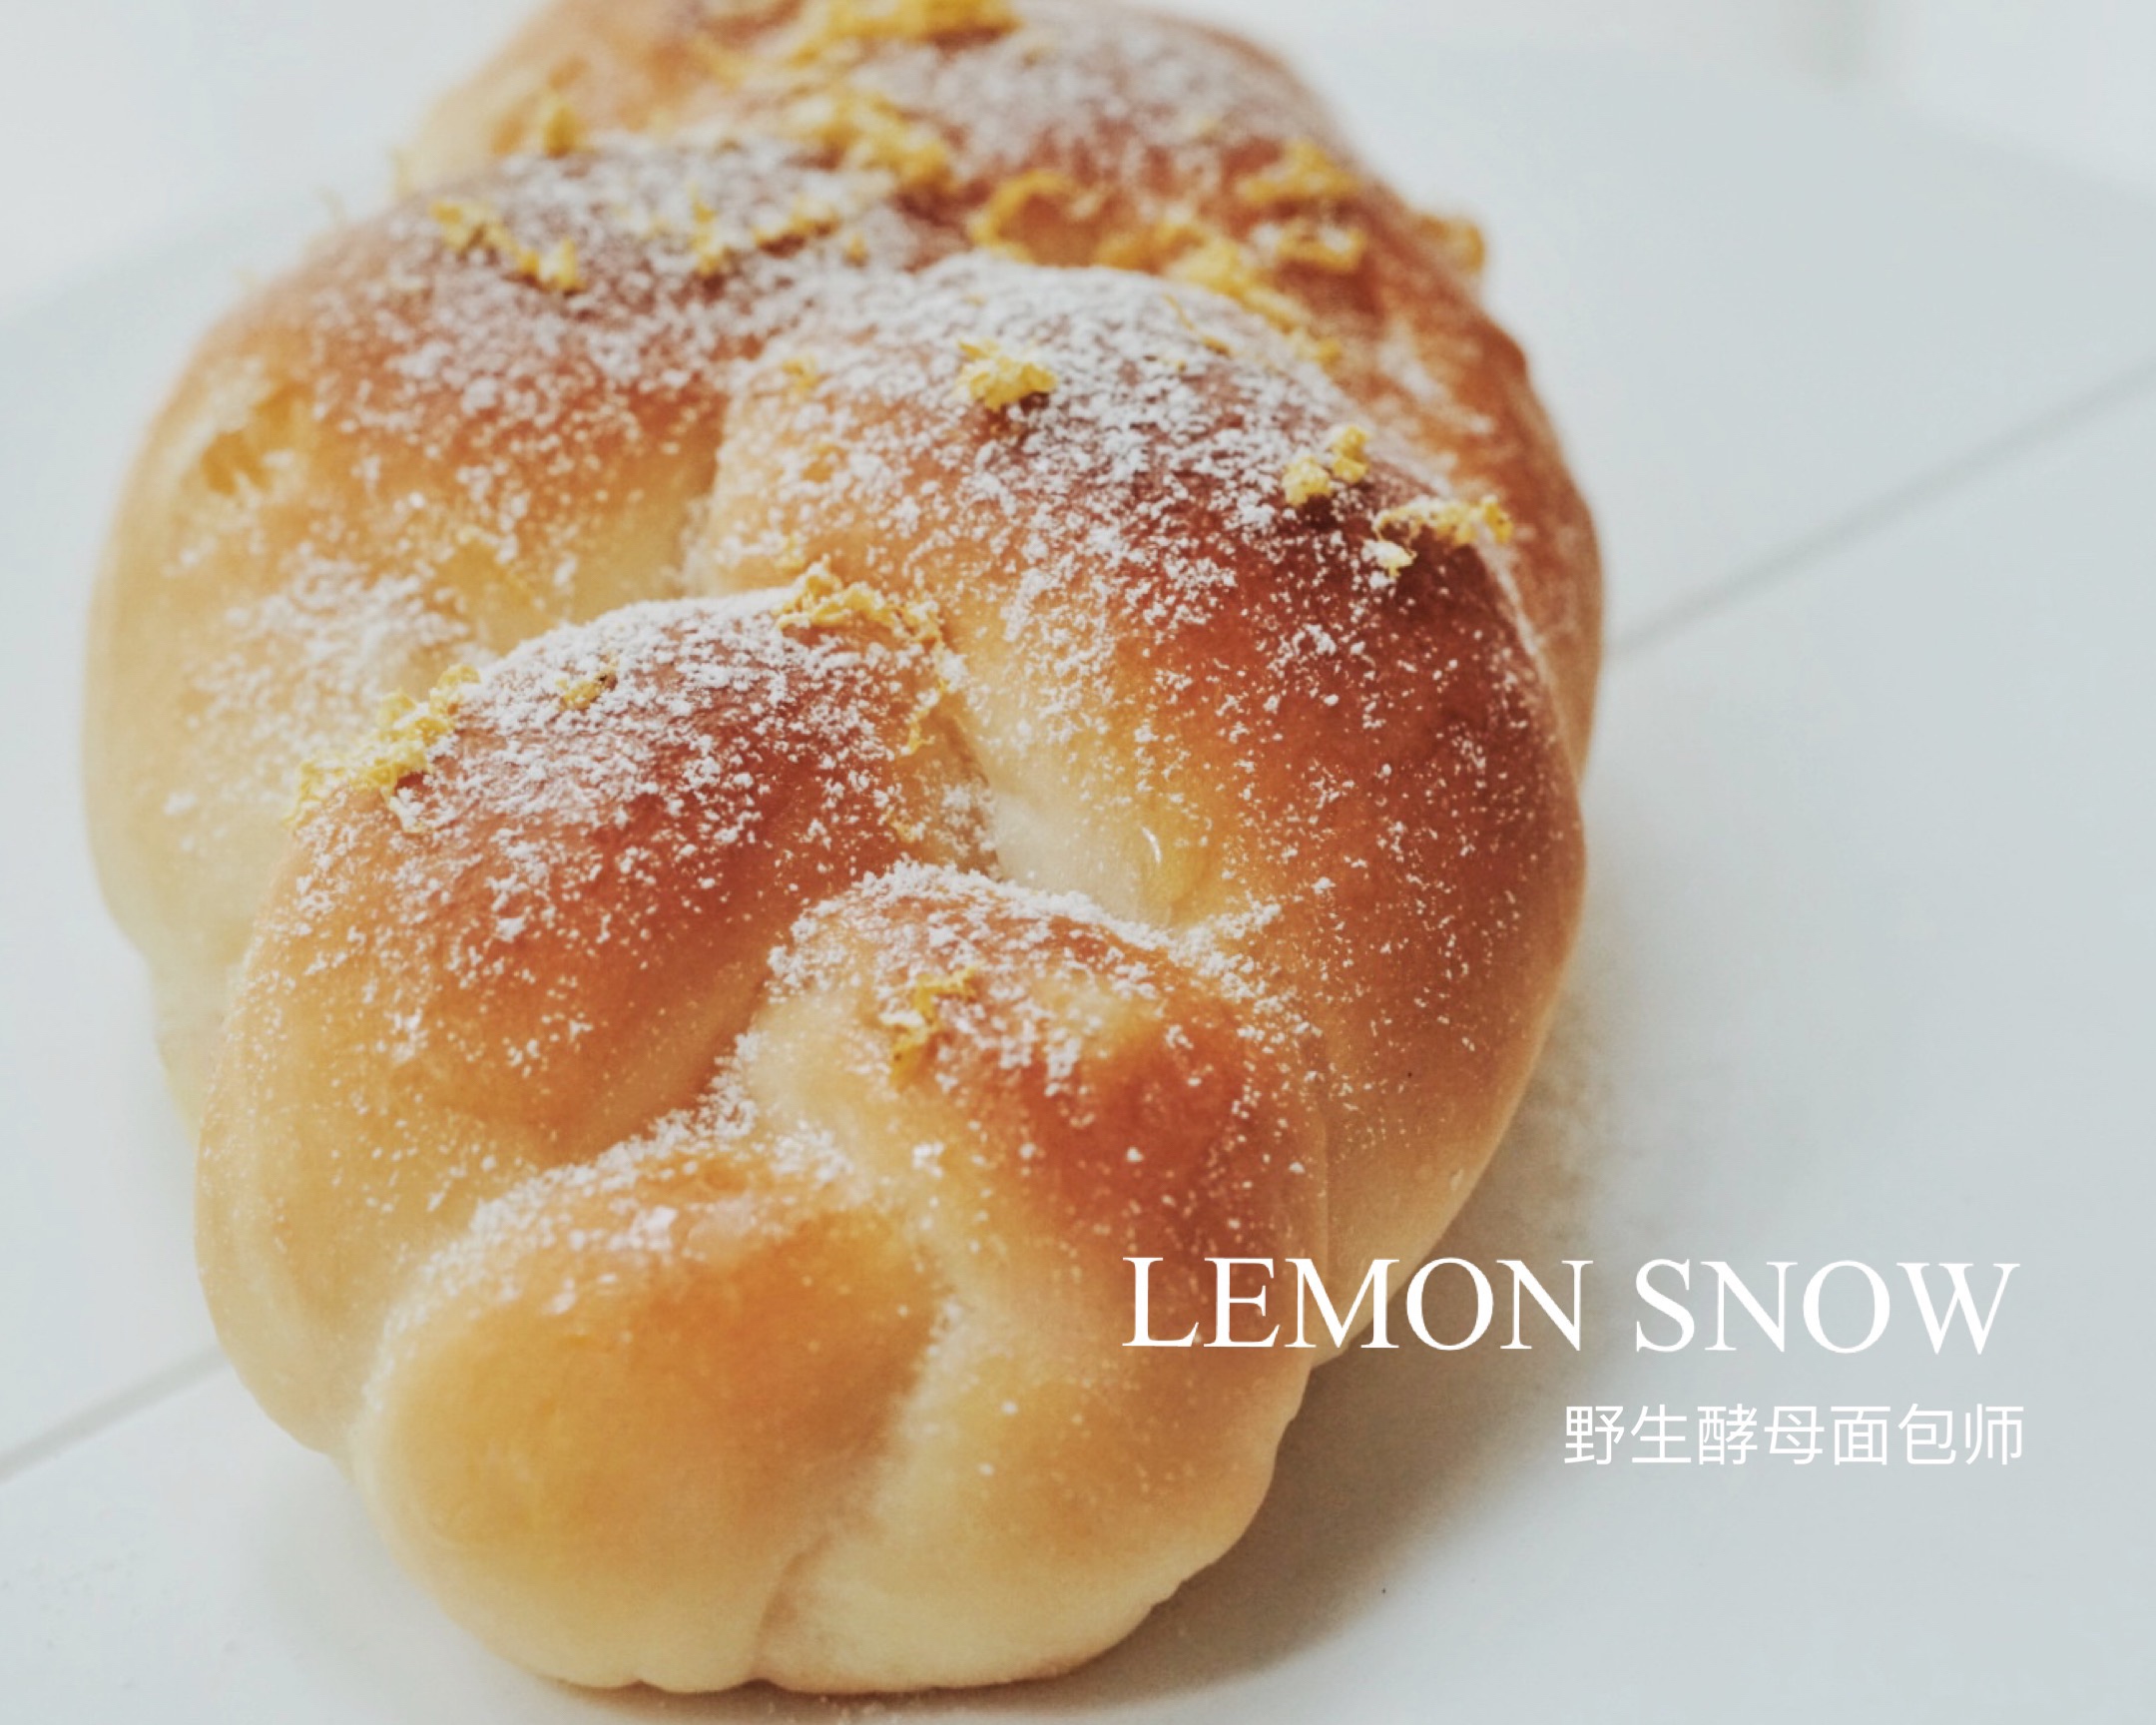 LEMON SNOW 柠檬雪顶面包